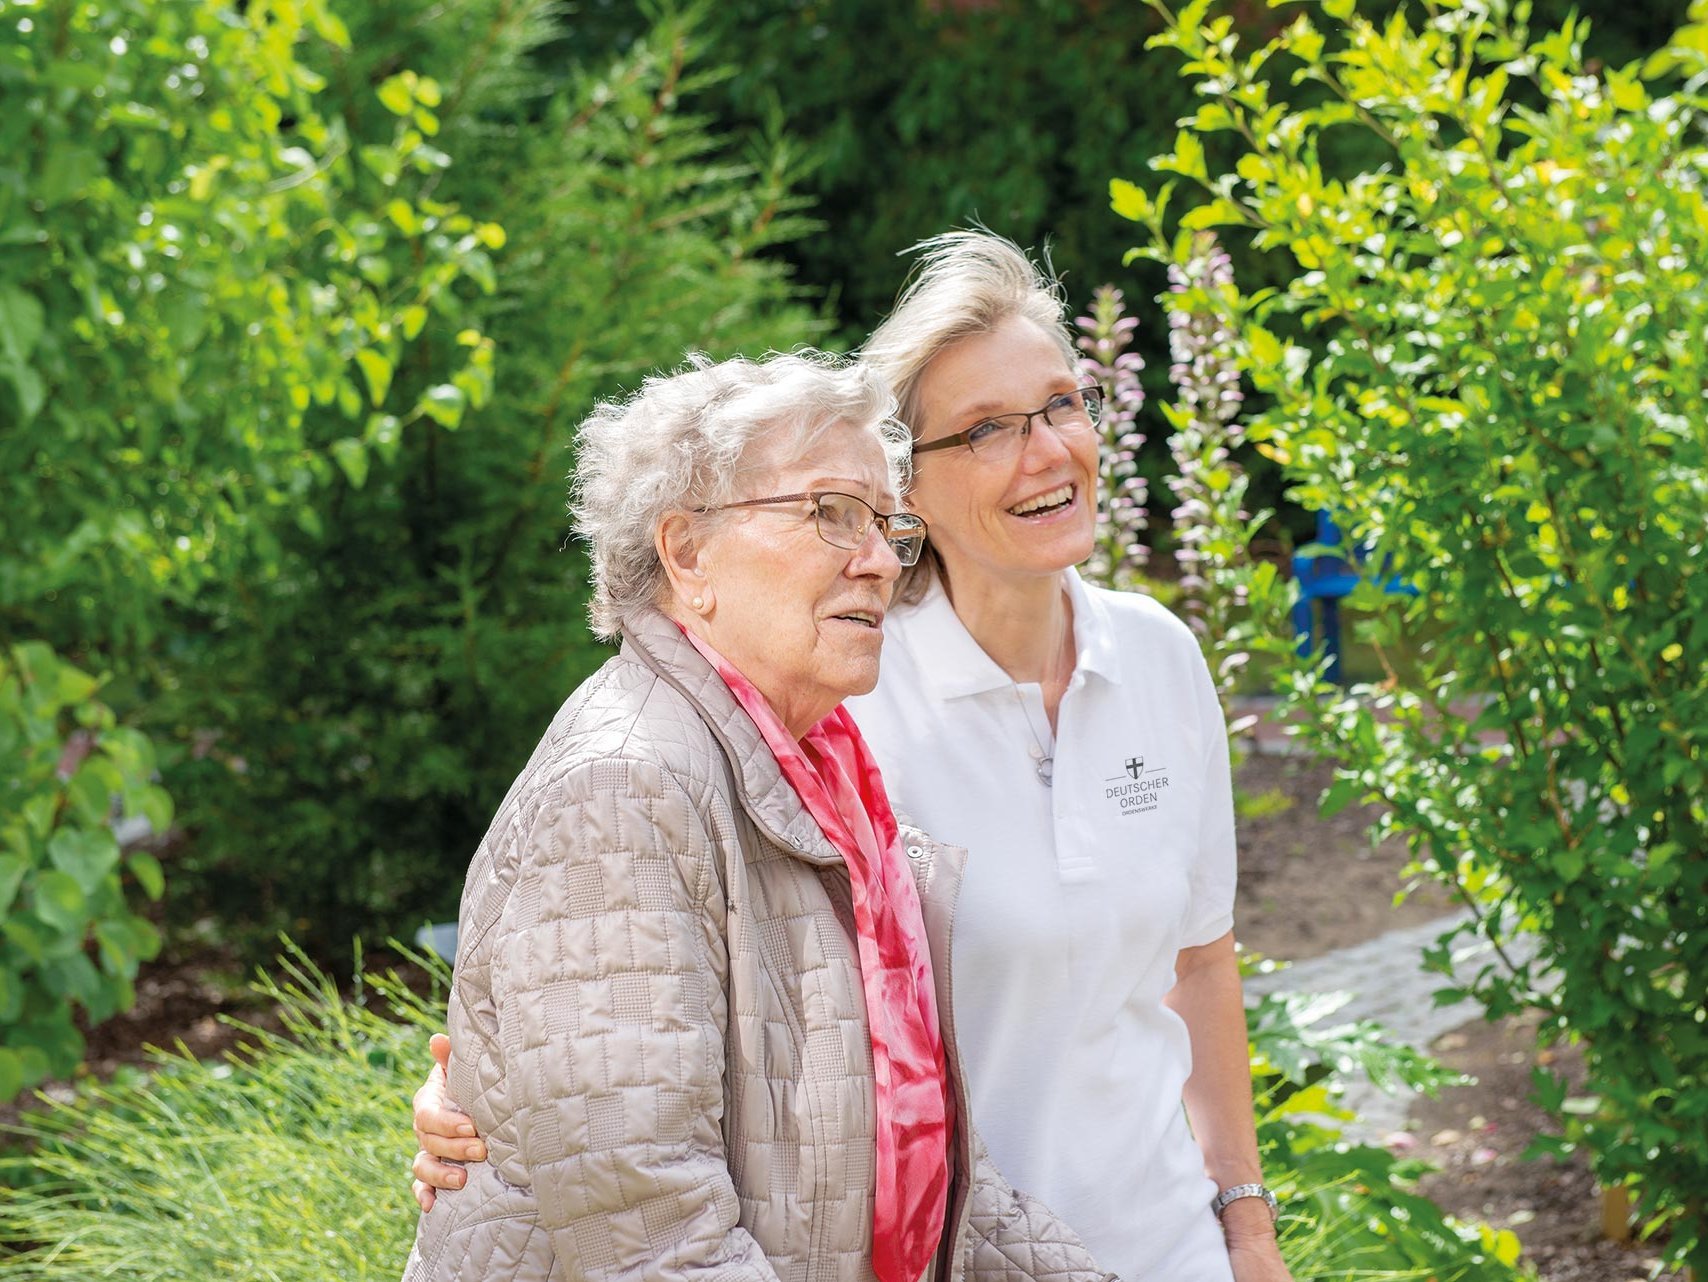 Eine Pflegerin zeigt einer Bewohnerin etwas im Garten (nicht sichtbar) - beide lächeln